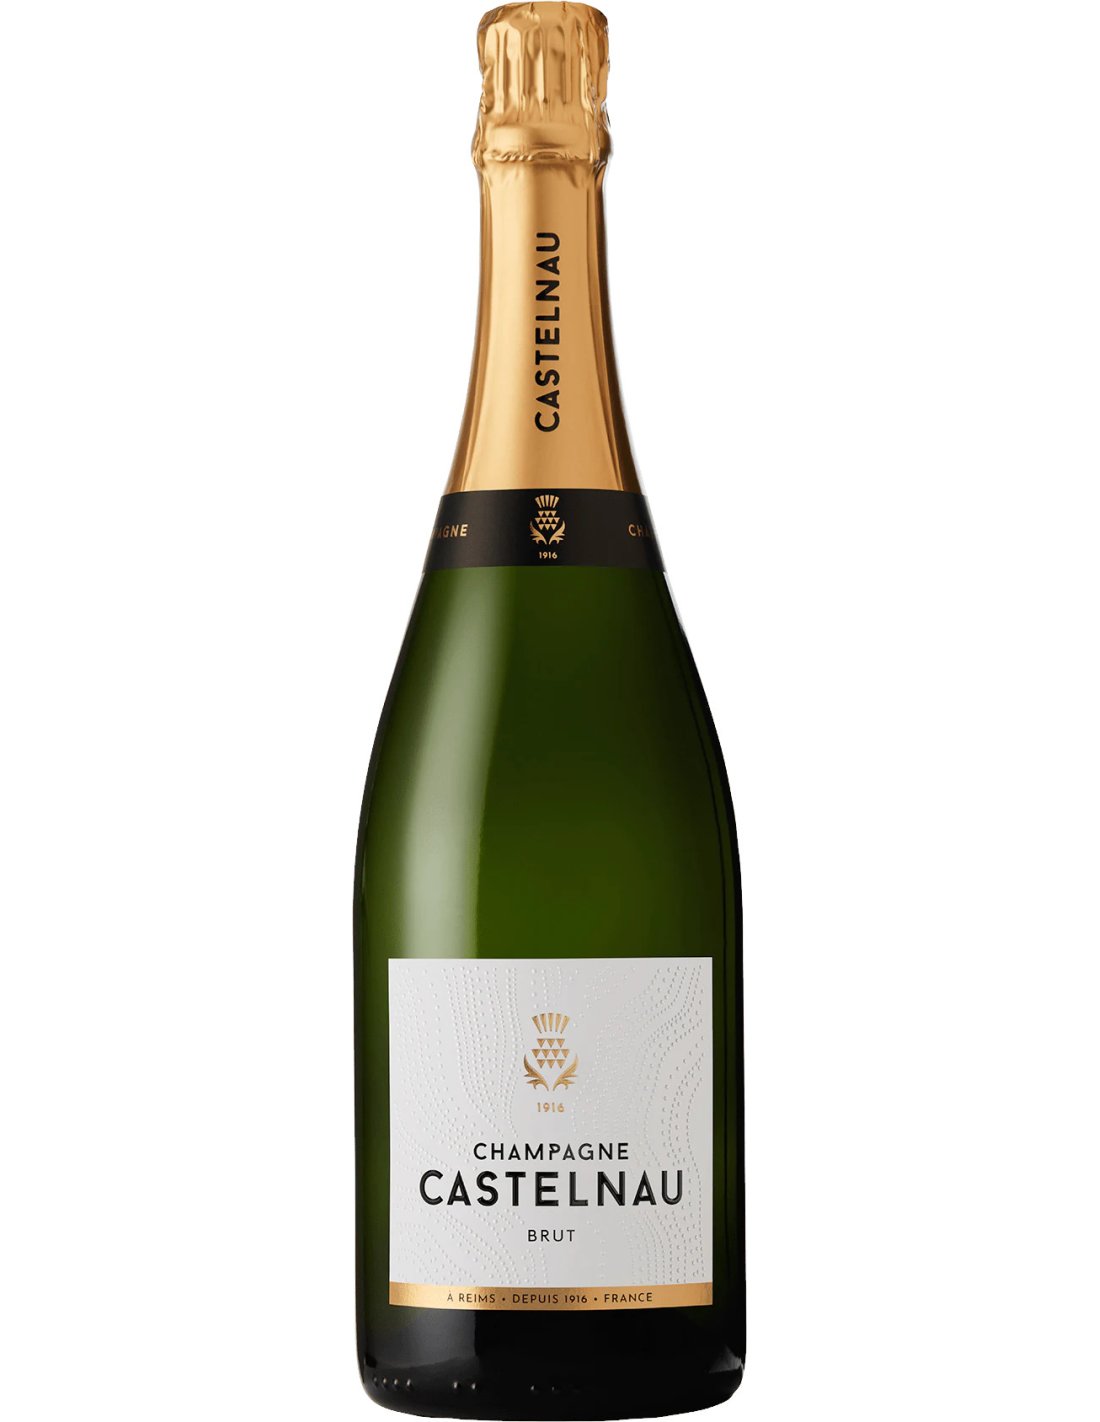 Champagne brut Castelnau l'assemblage réussi créateur depuis 1916